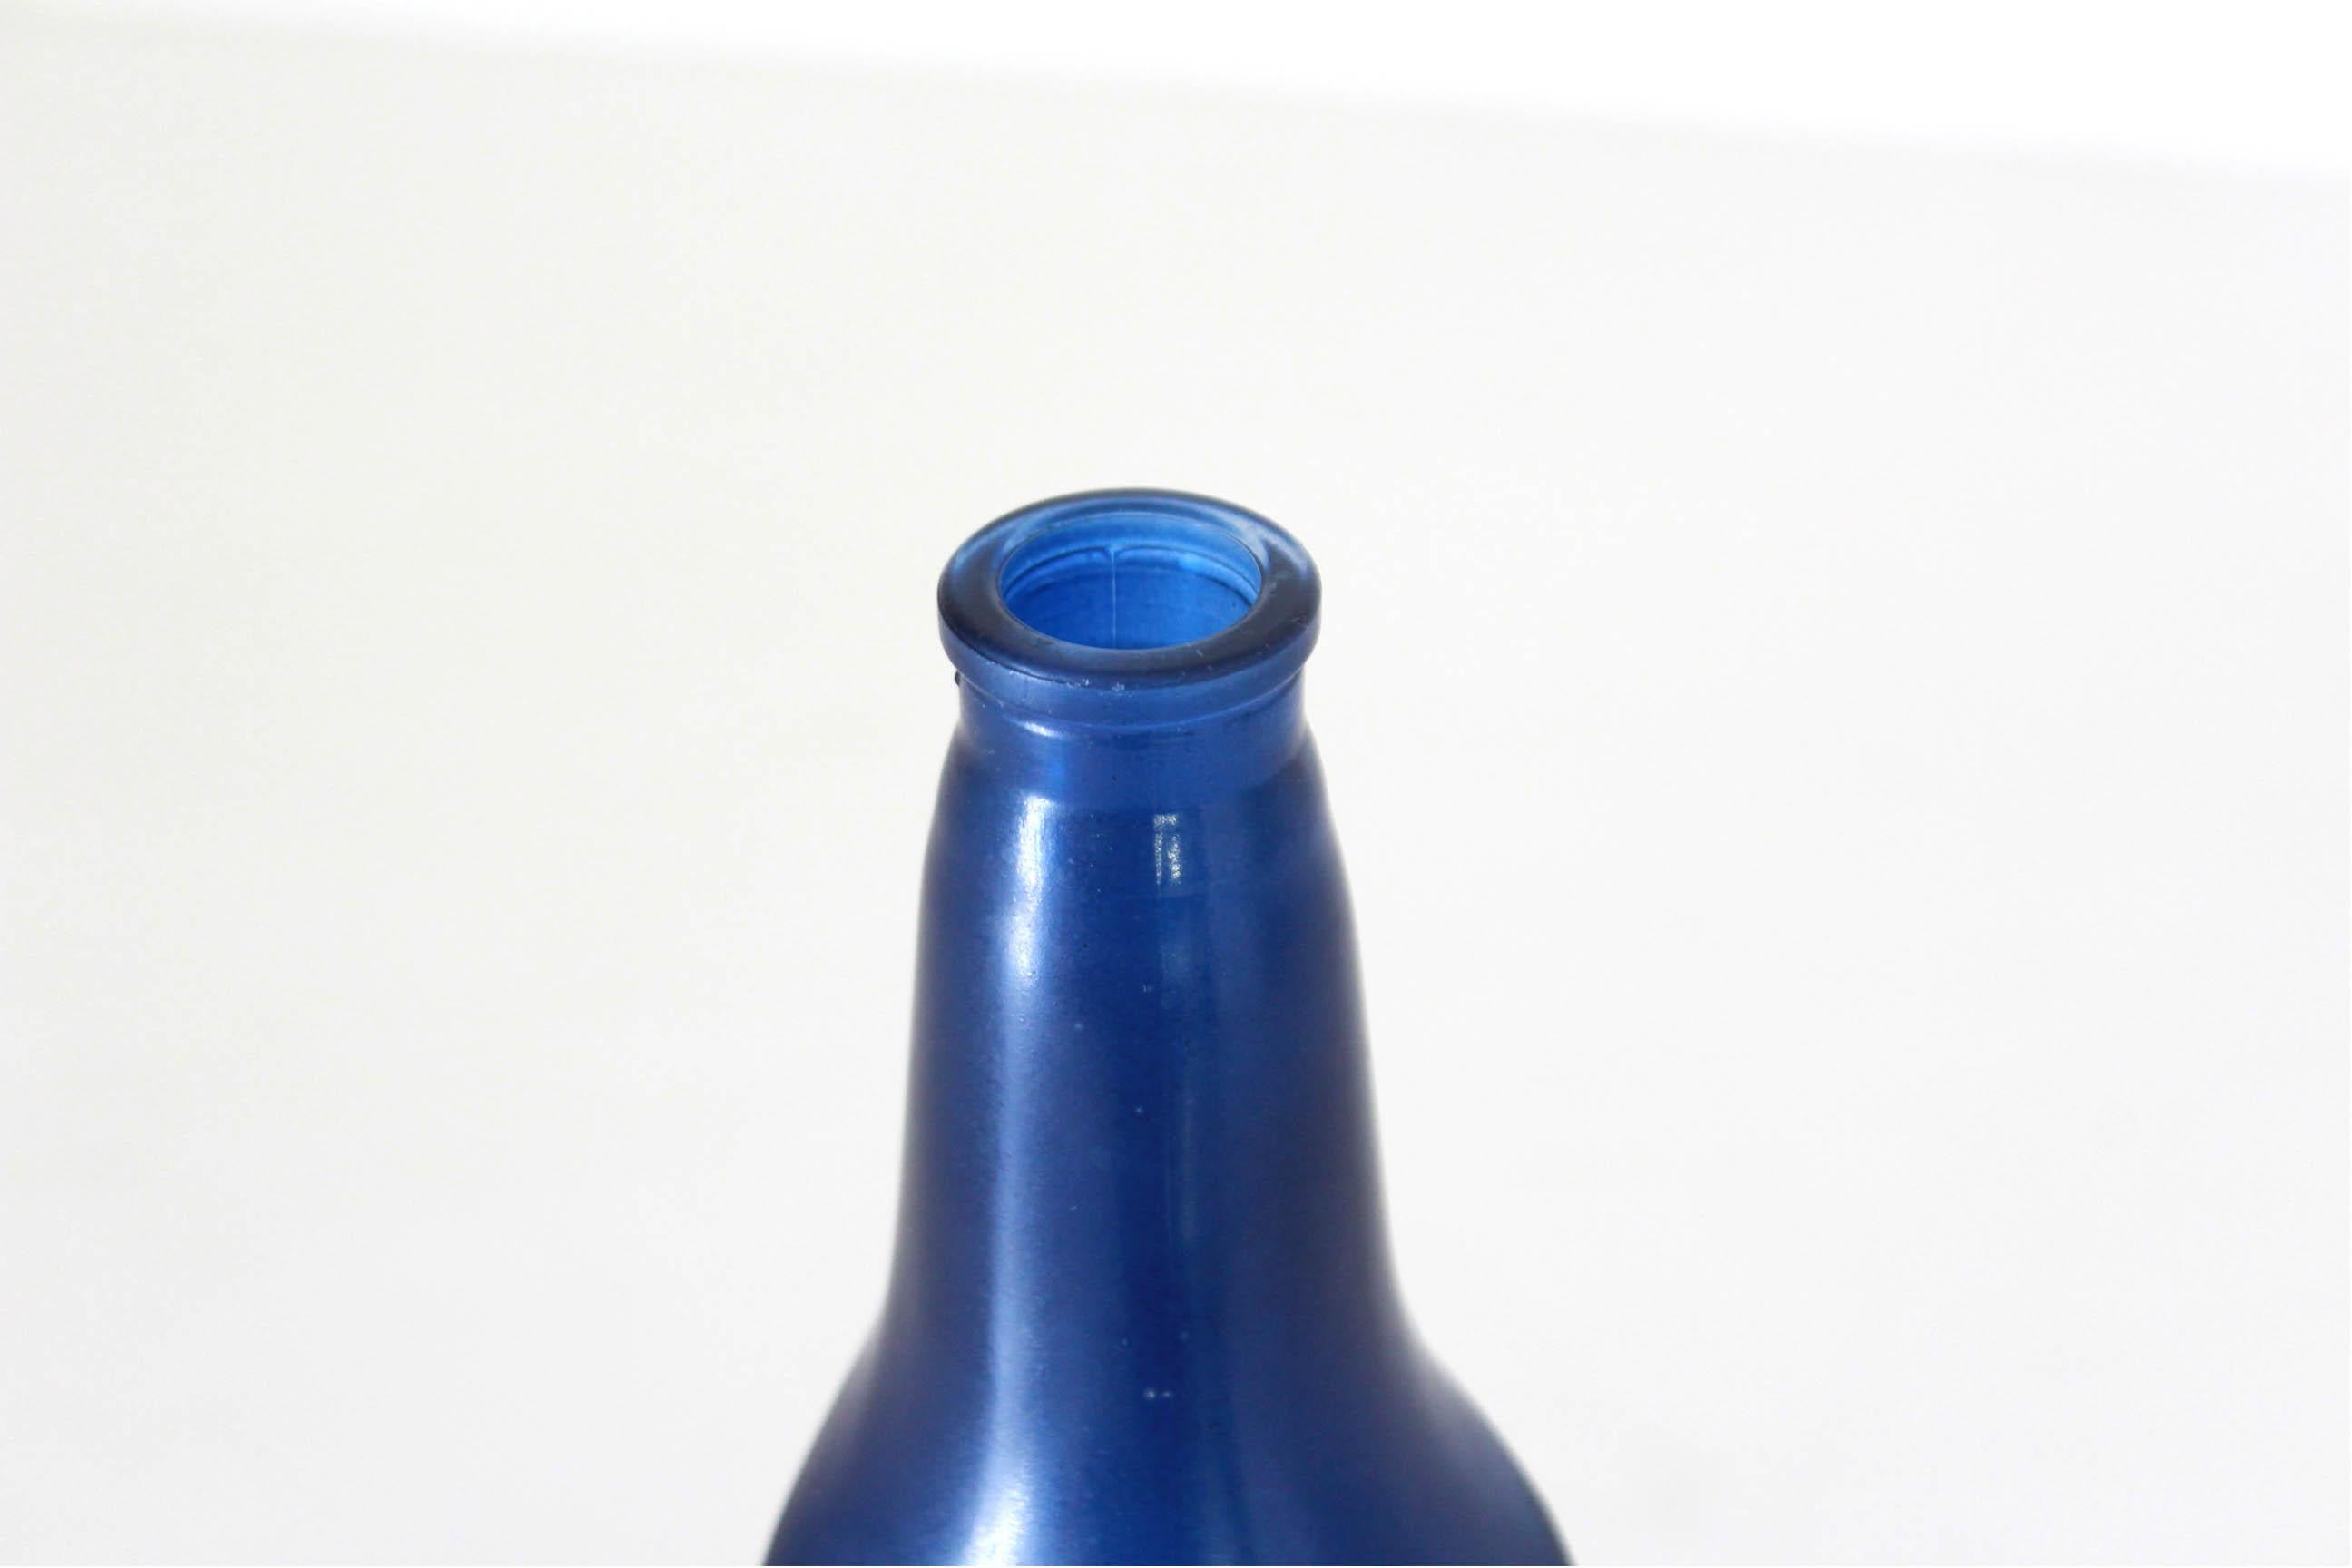 Vintage Bottle, Salvador Dali für Rosso Antico Ltd, Italien 1970er Jahre, Satz von drei
Seltenes Trio farbiger Schnapsflaschen aus Glas im surrealistischen Stil, entworfen von Salvador Dali für die italienische Schnapsfirma 